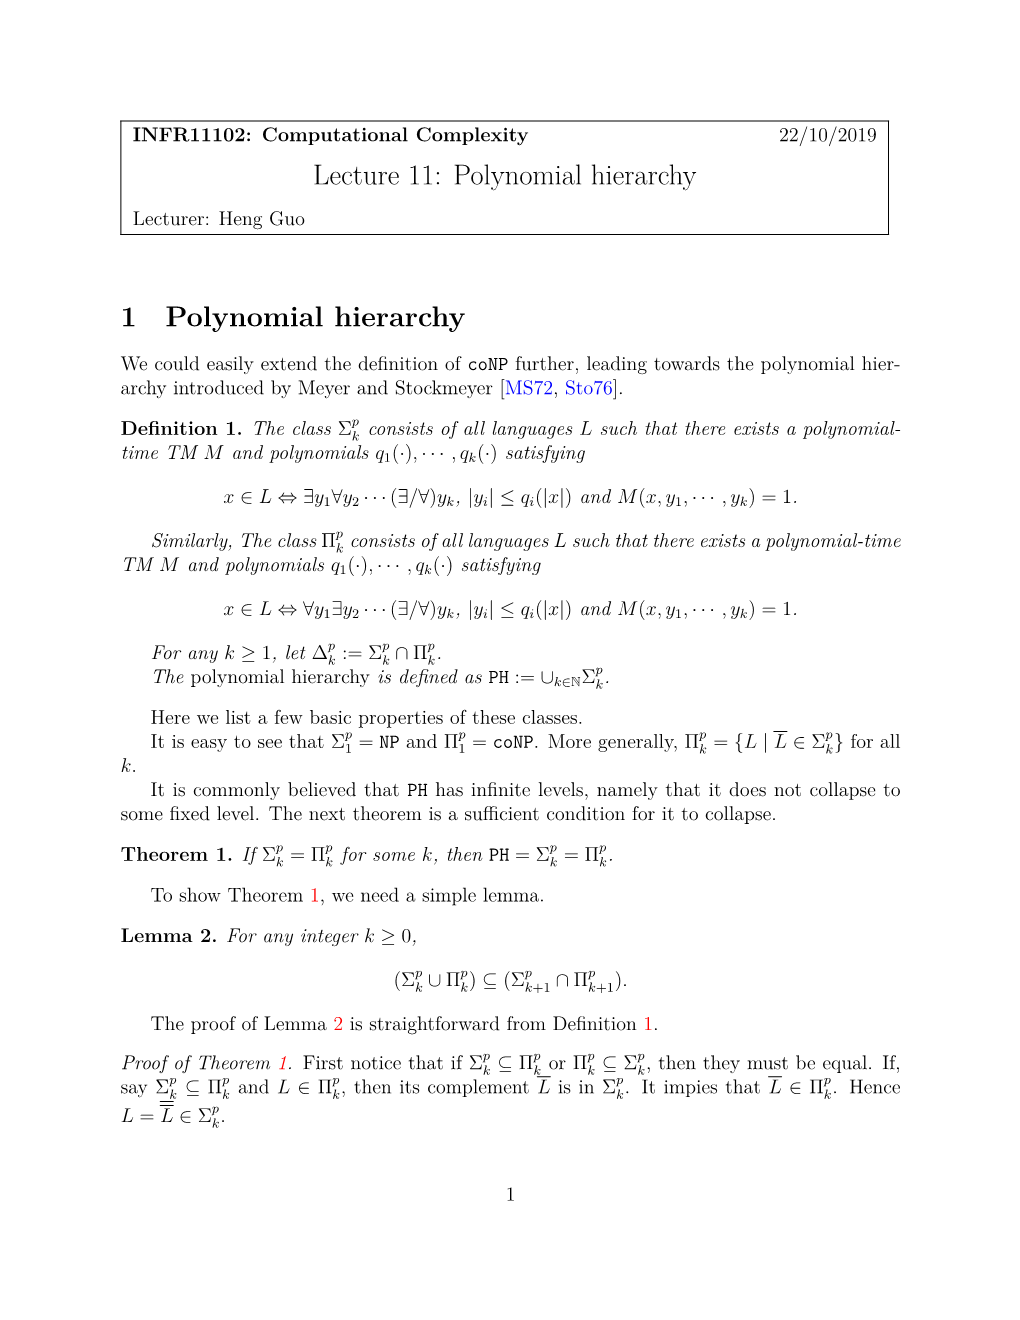 Lecture 11: Polynomial Hierarchy 1 Polynomial Hierarchy